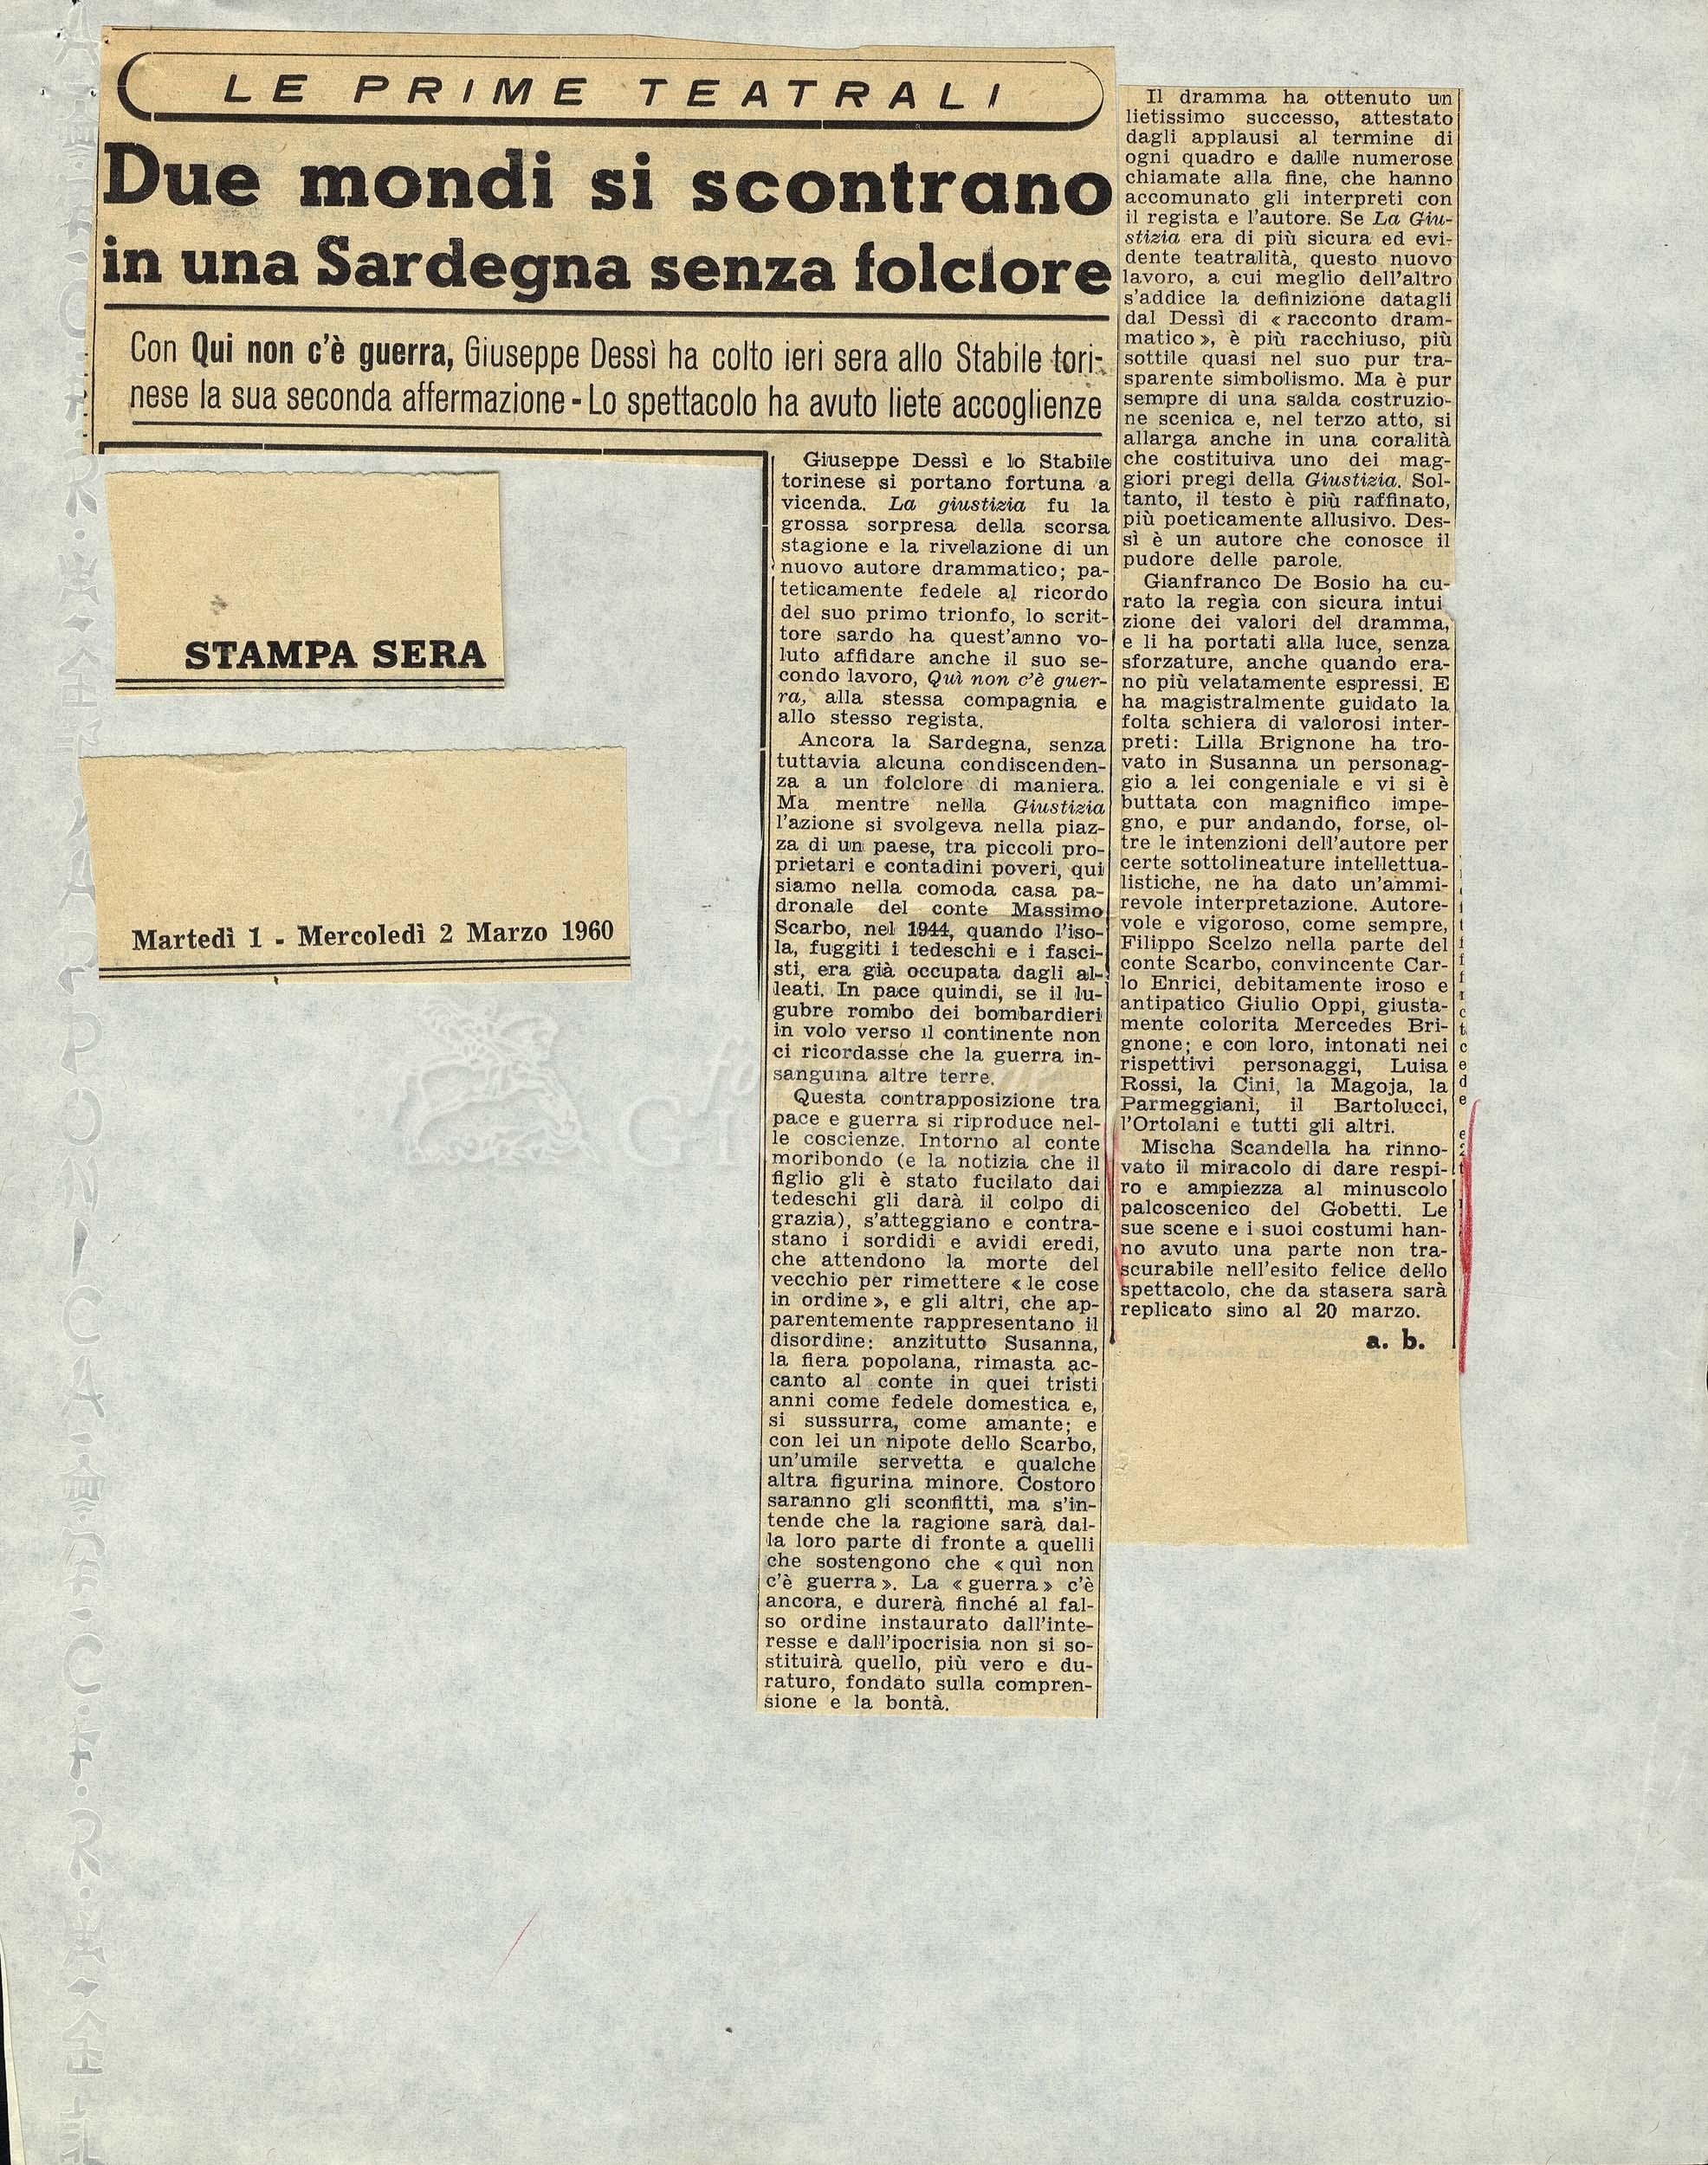 Due mondi si scontrano in una Sardegna senza folclore
				 01 marzo 1960 - 02 marzo 1960